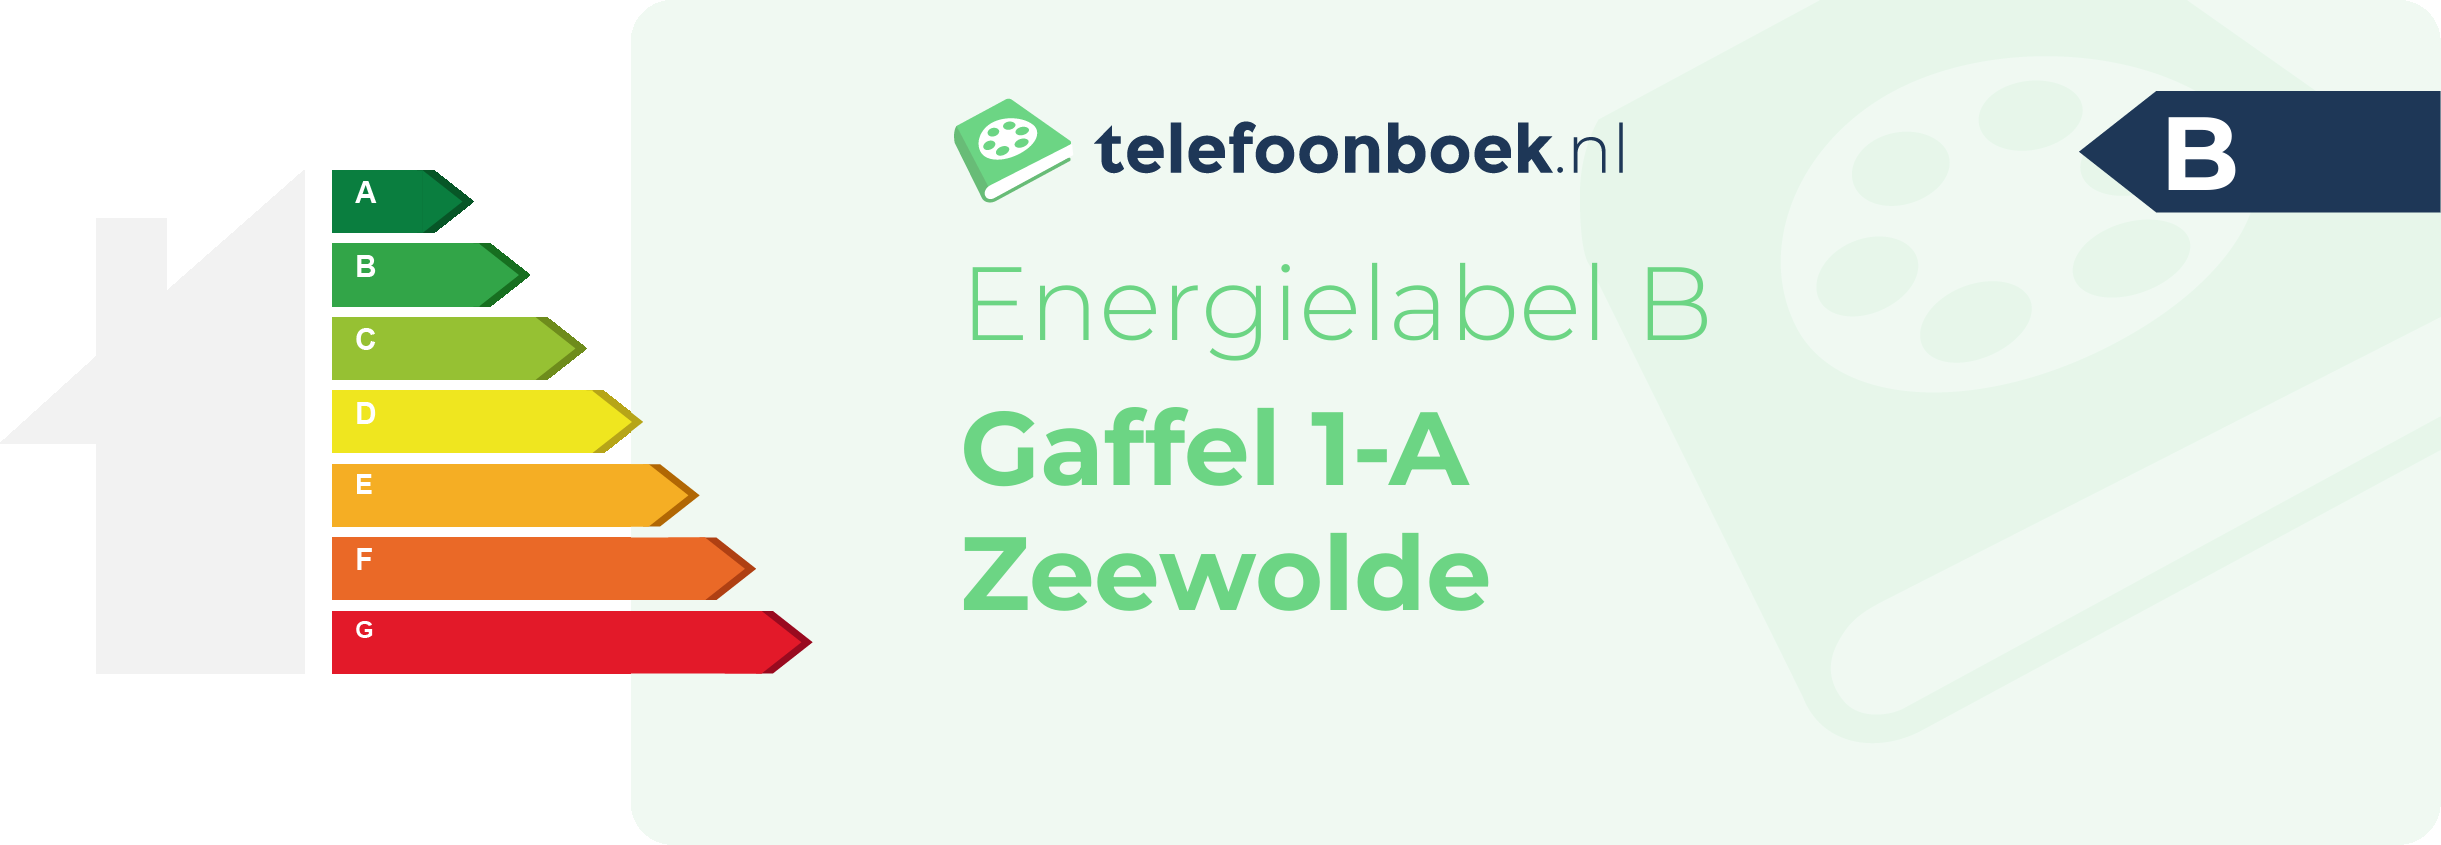 Energielabel Gaffel 1-A Zeewolde